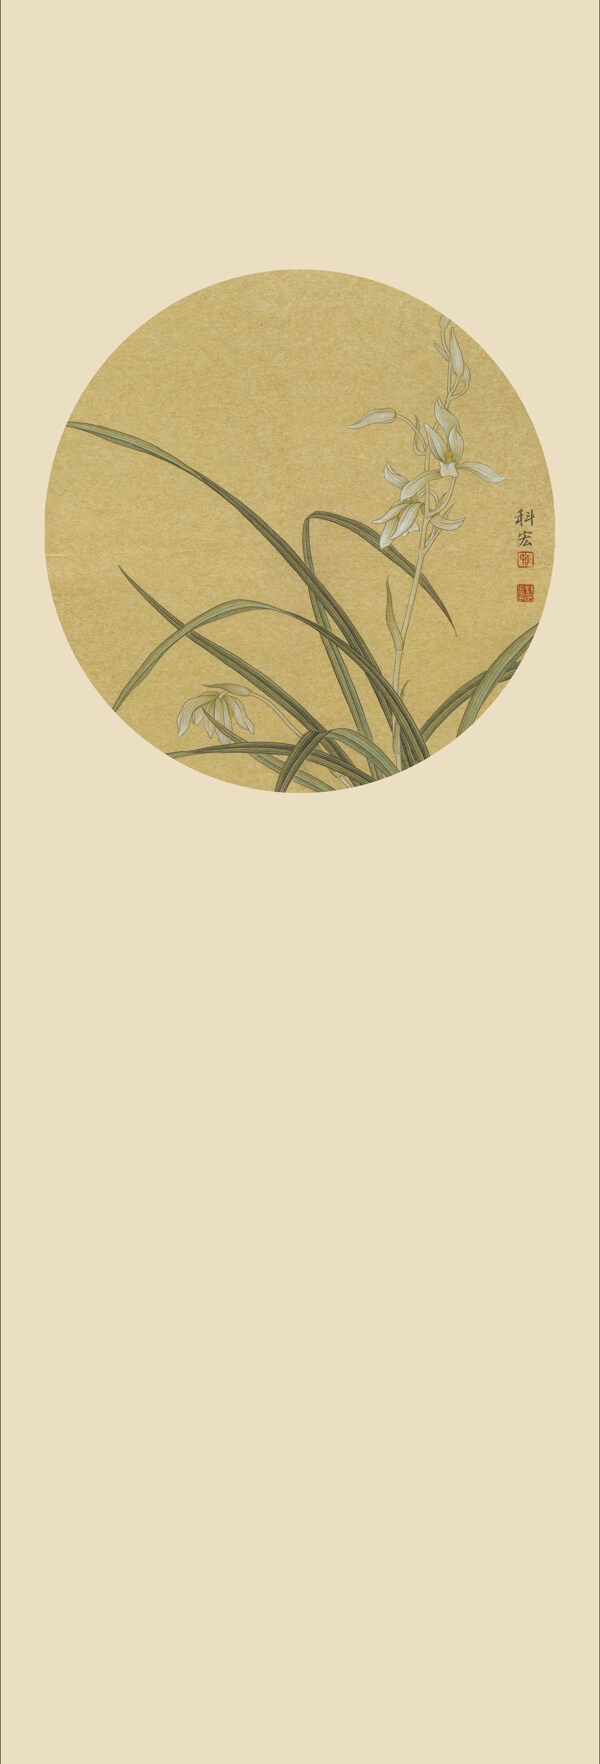 床头背景壁纸之梅兰竹菊